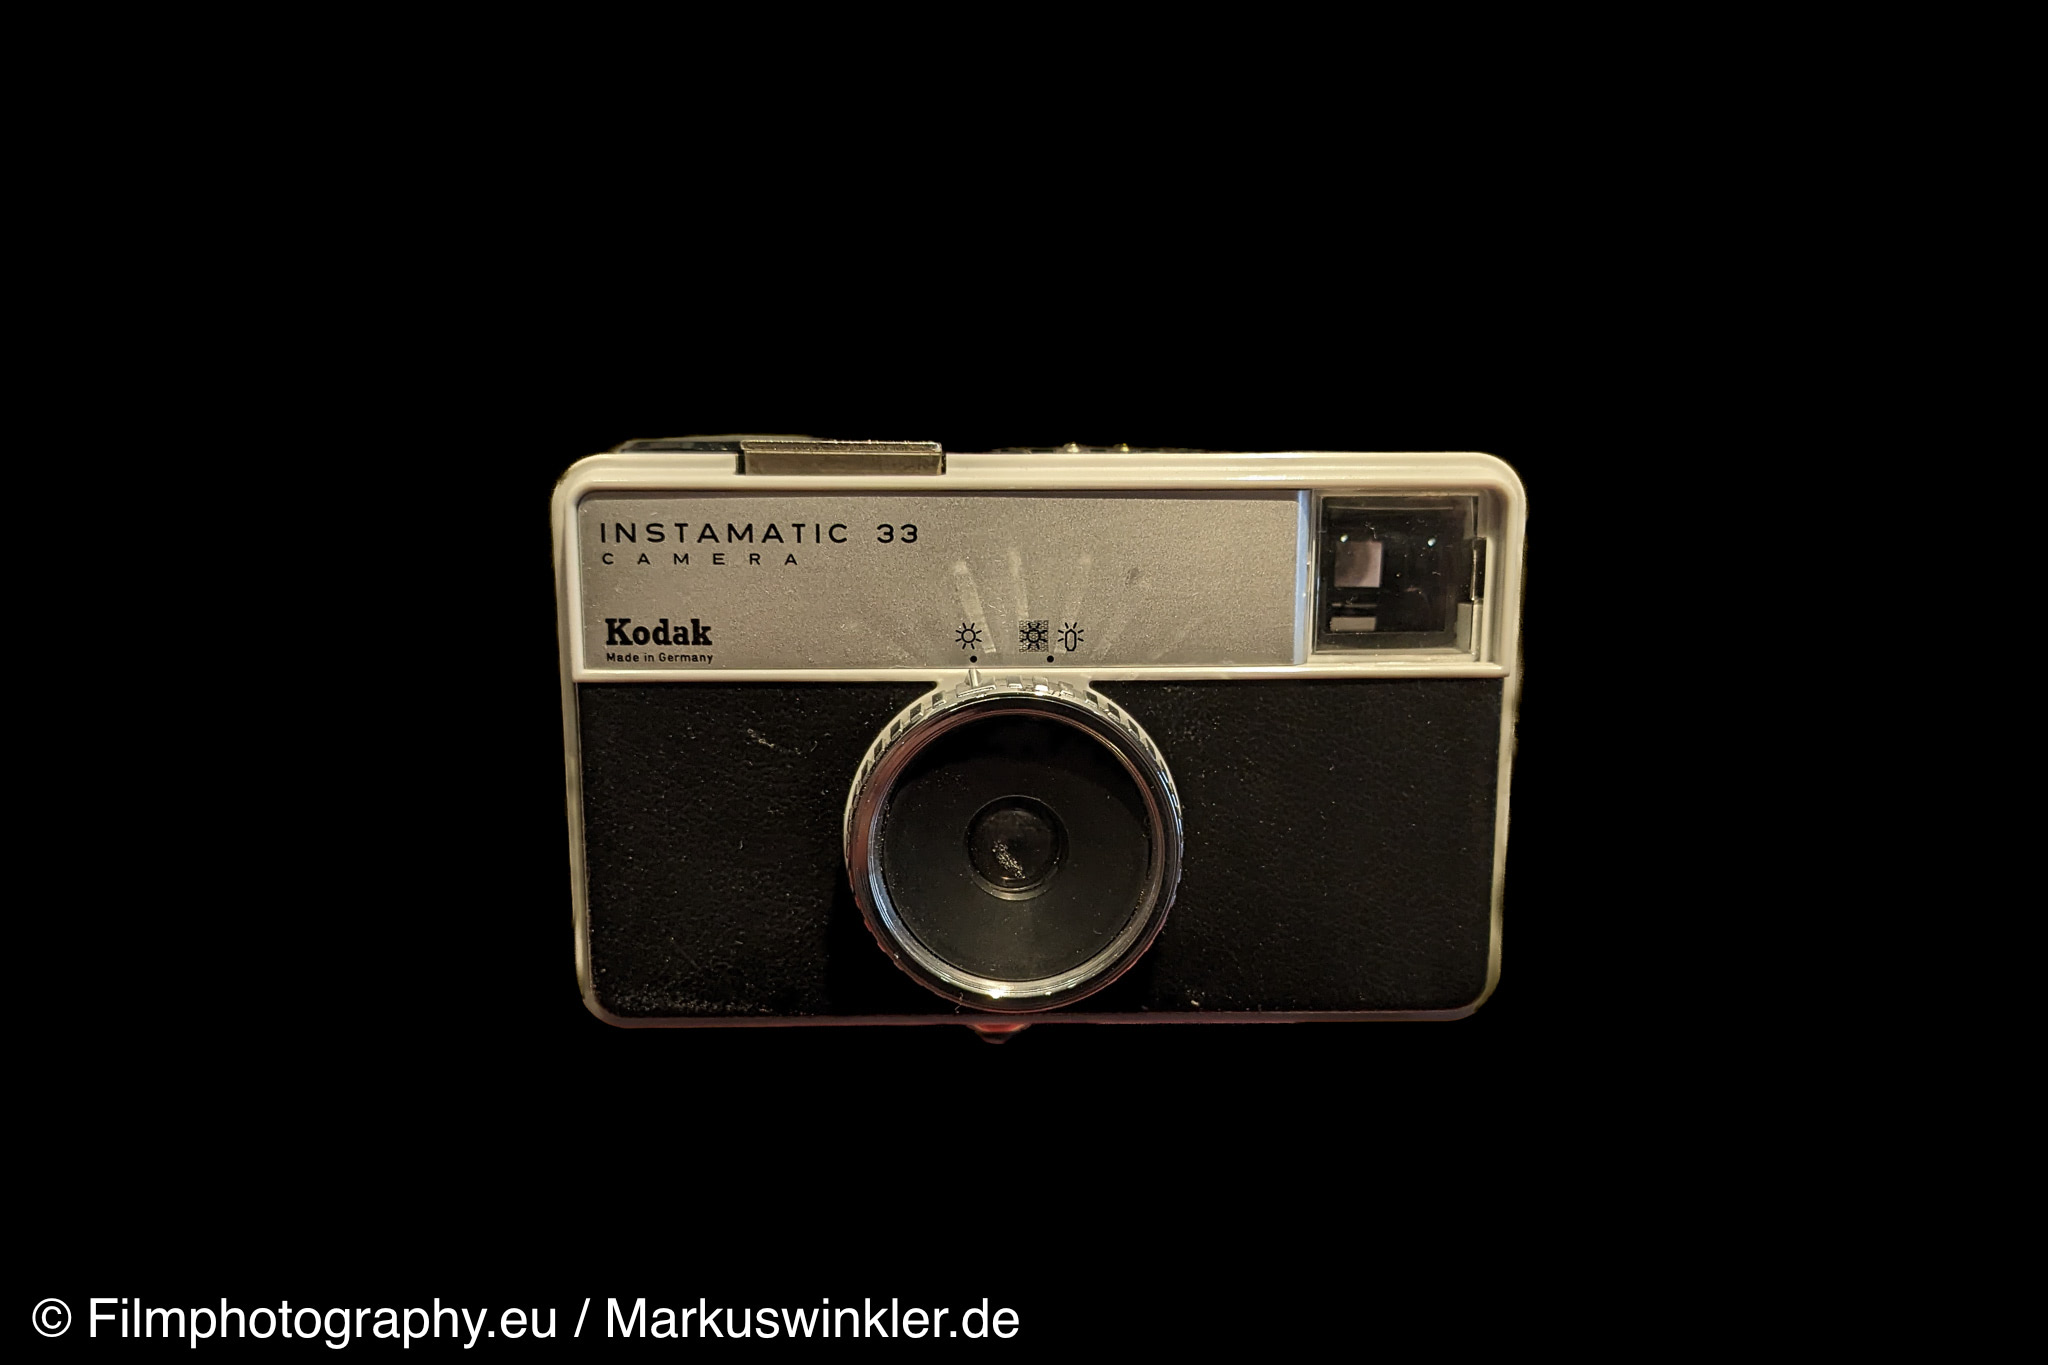 kodak-instamatic-33-camera